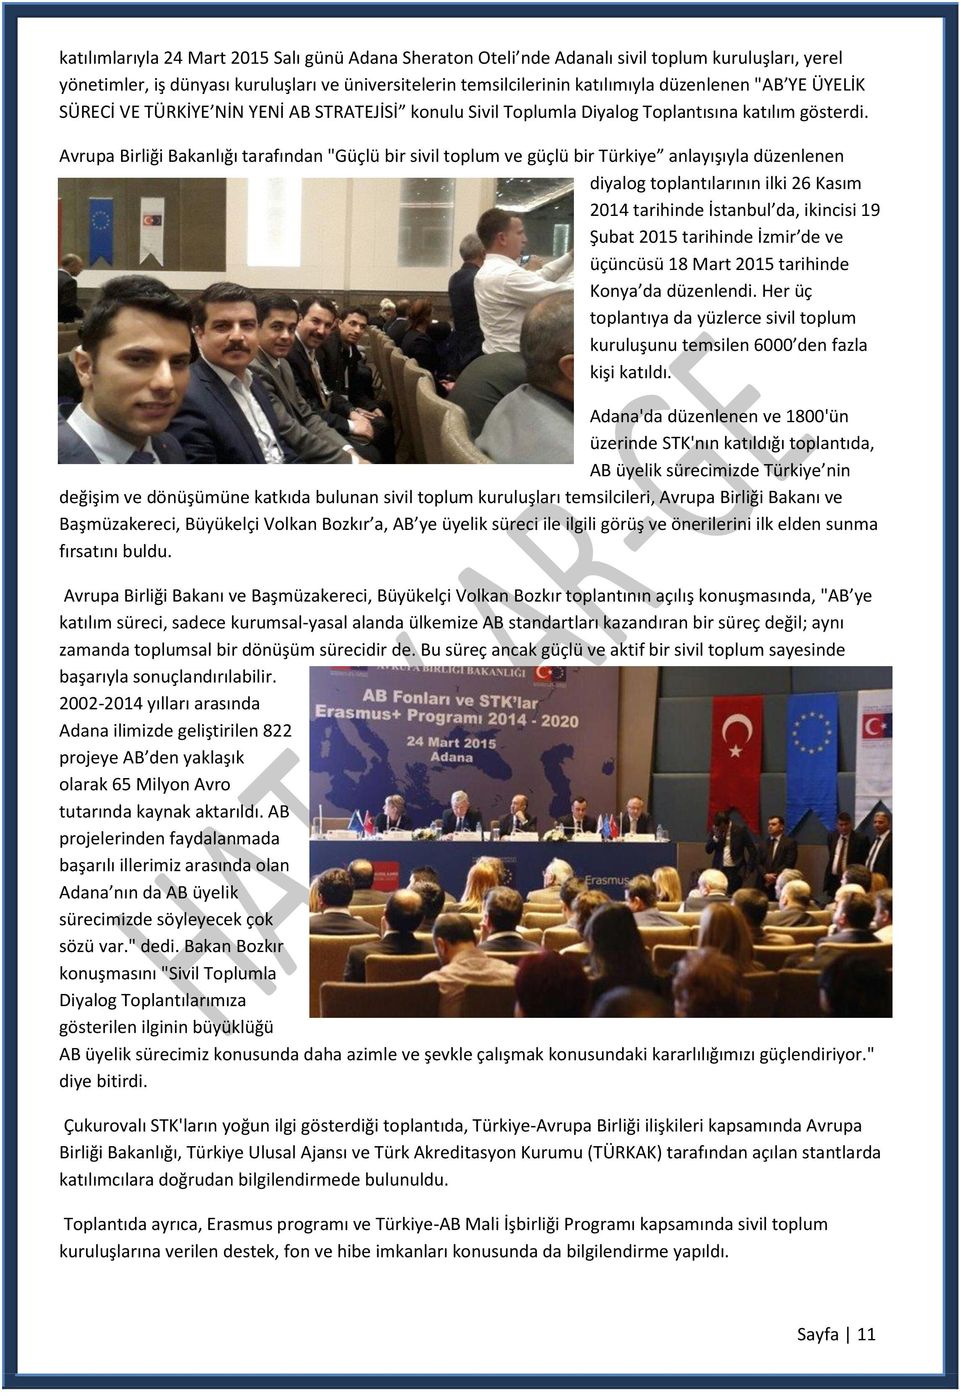 Avrupa Birliği Bakanlığı tarafından "Güçlü bir sivil toplum ve güçlü bir Türkiye anlayışıyla düzenlenen diyalog toplantılarının ilki 26 Kasım 2014 tarihinde İstanbul da, ikincisi 19 Şubat 2015